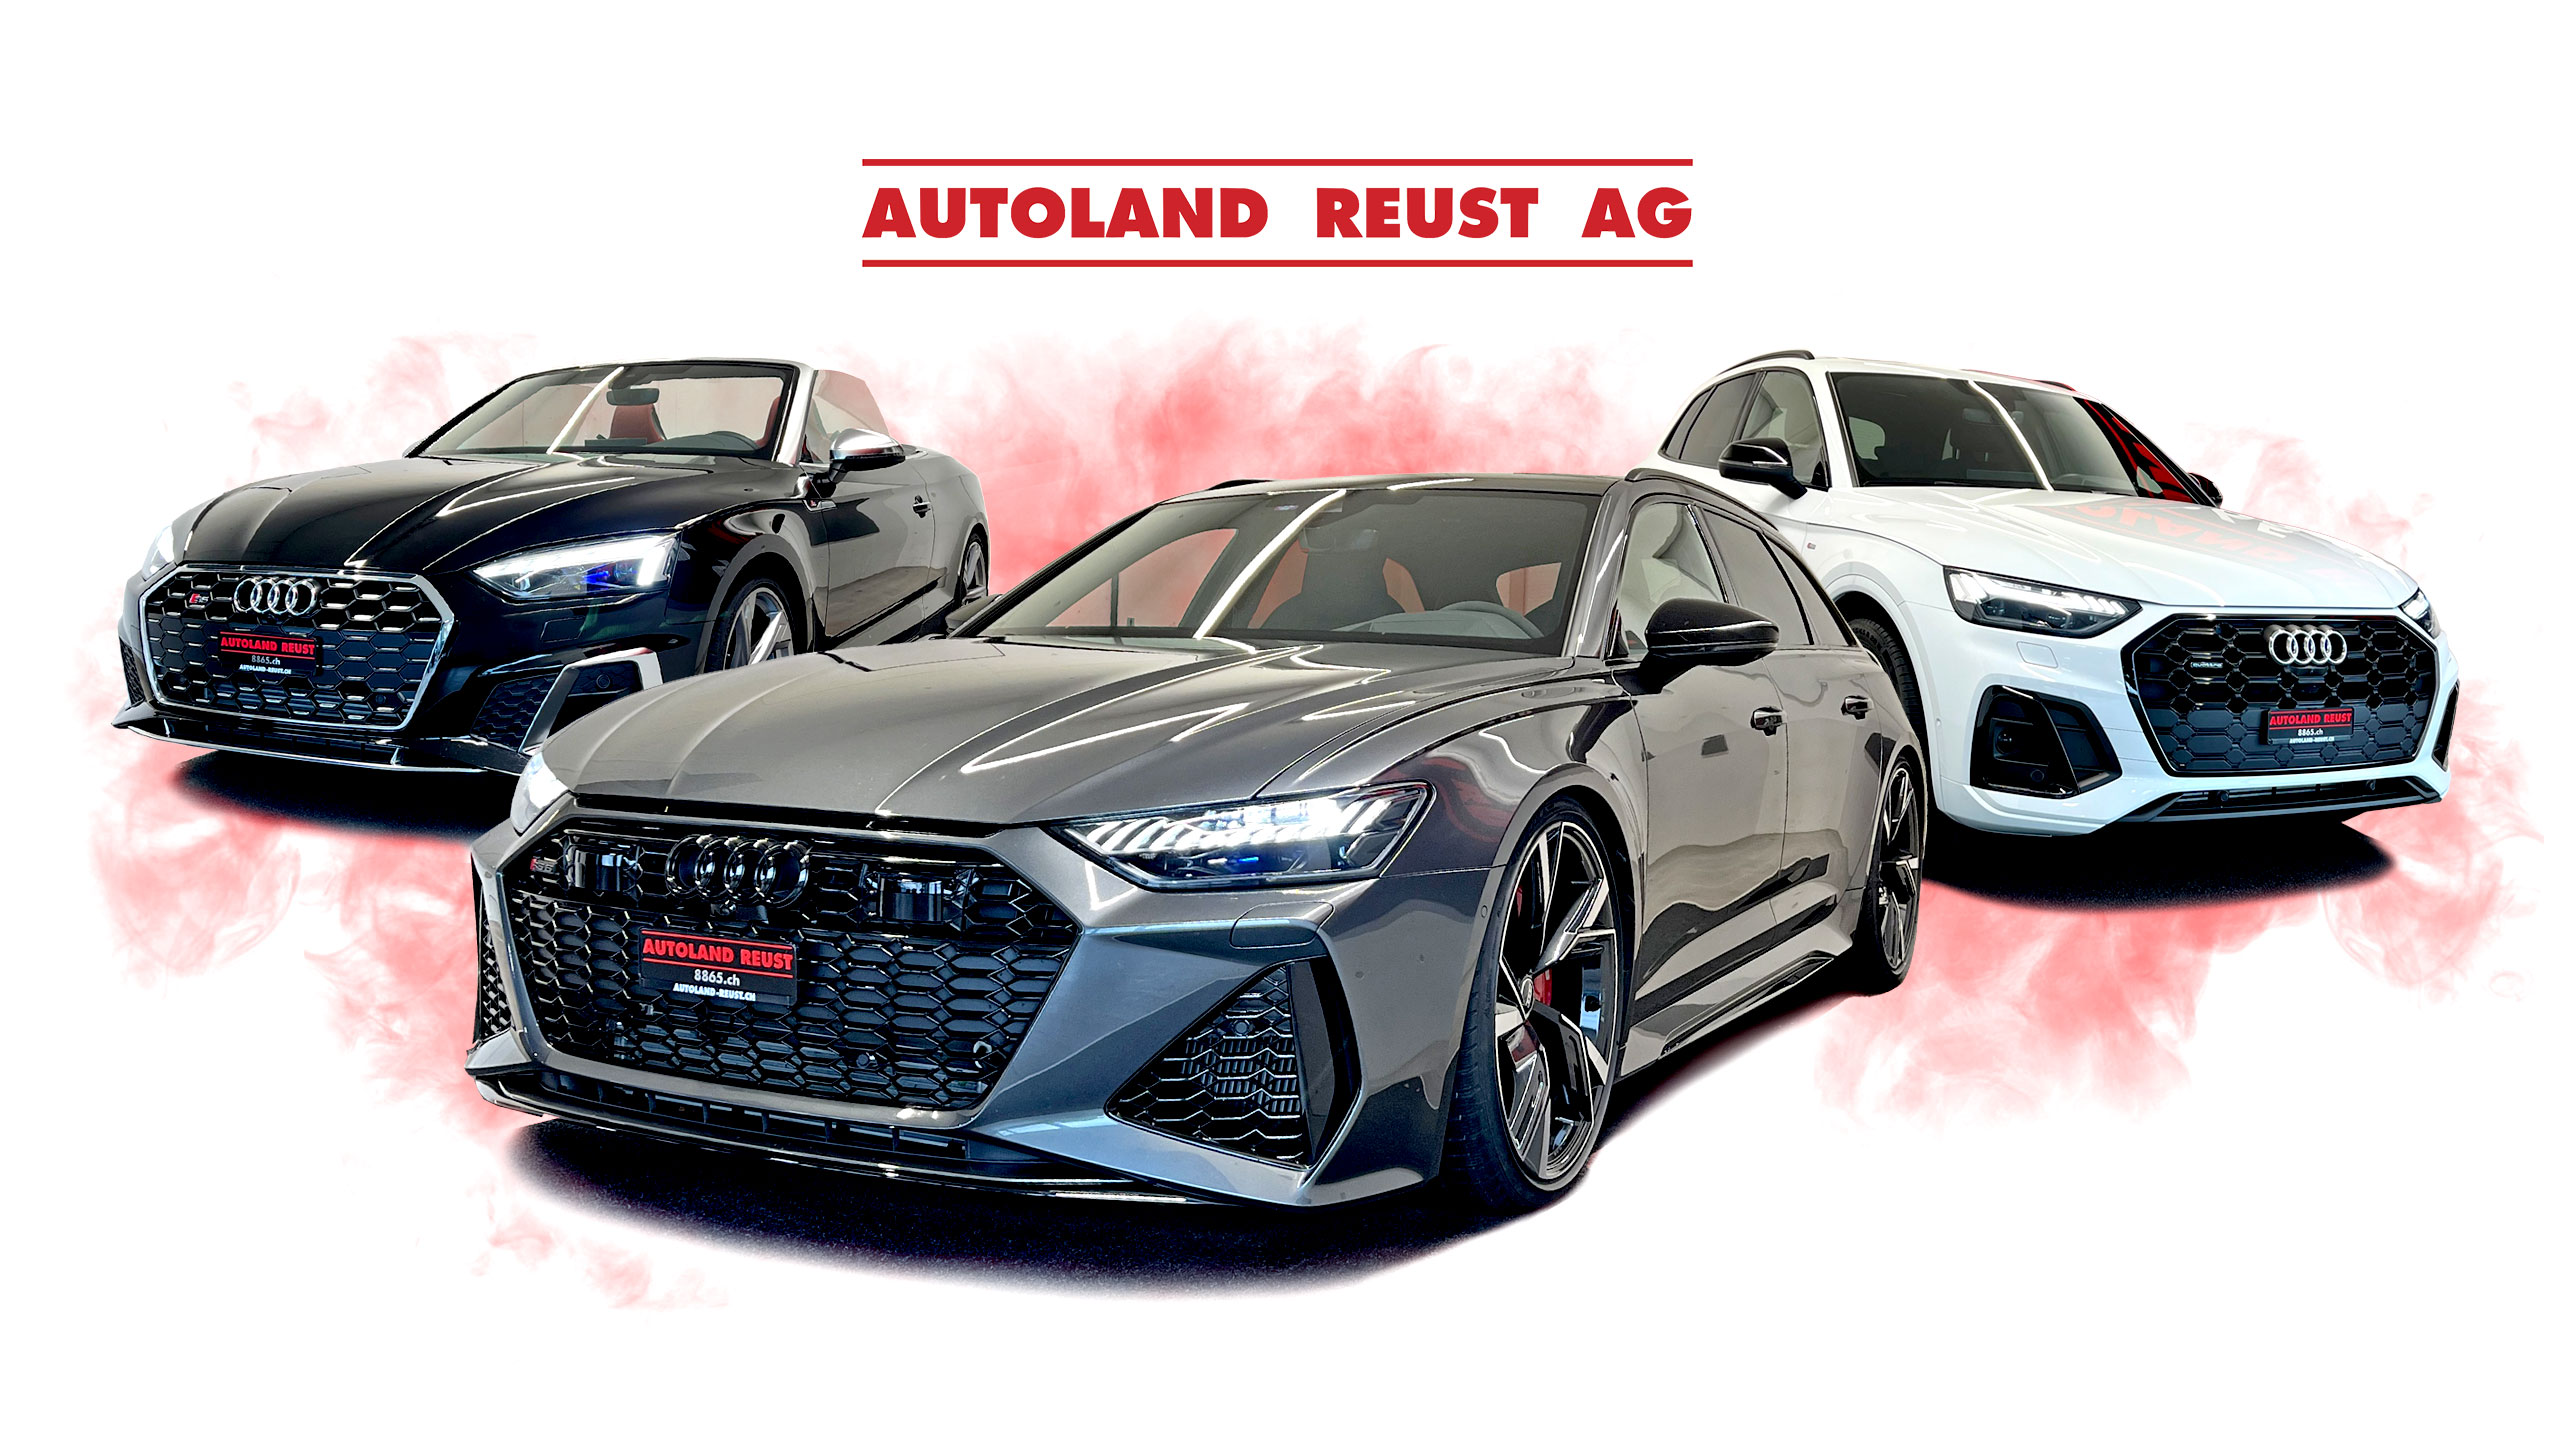 Autoland Reust AG